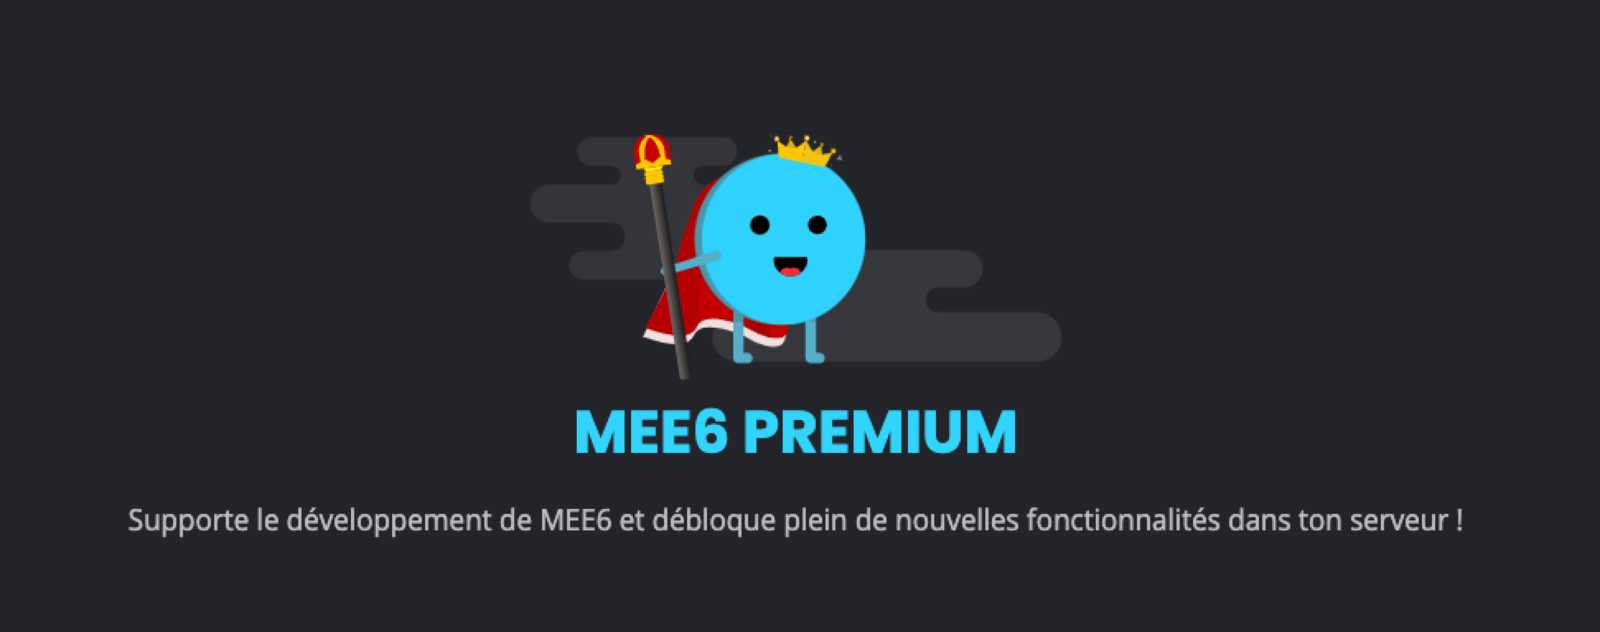 MEE6 Premium